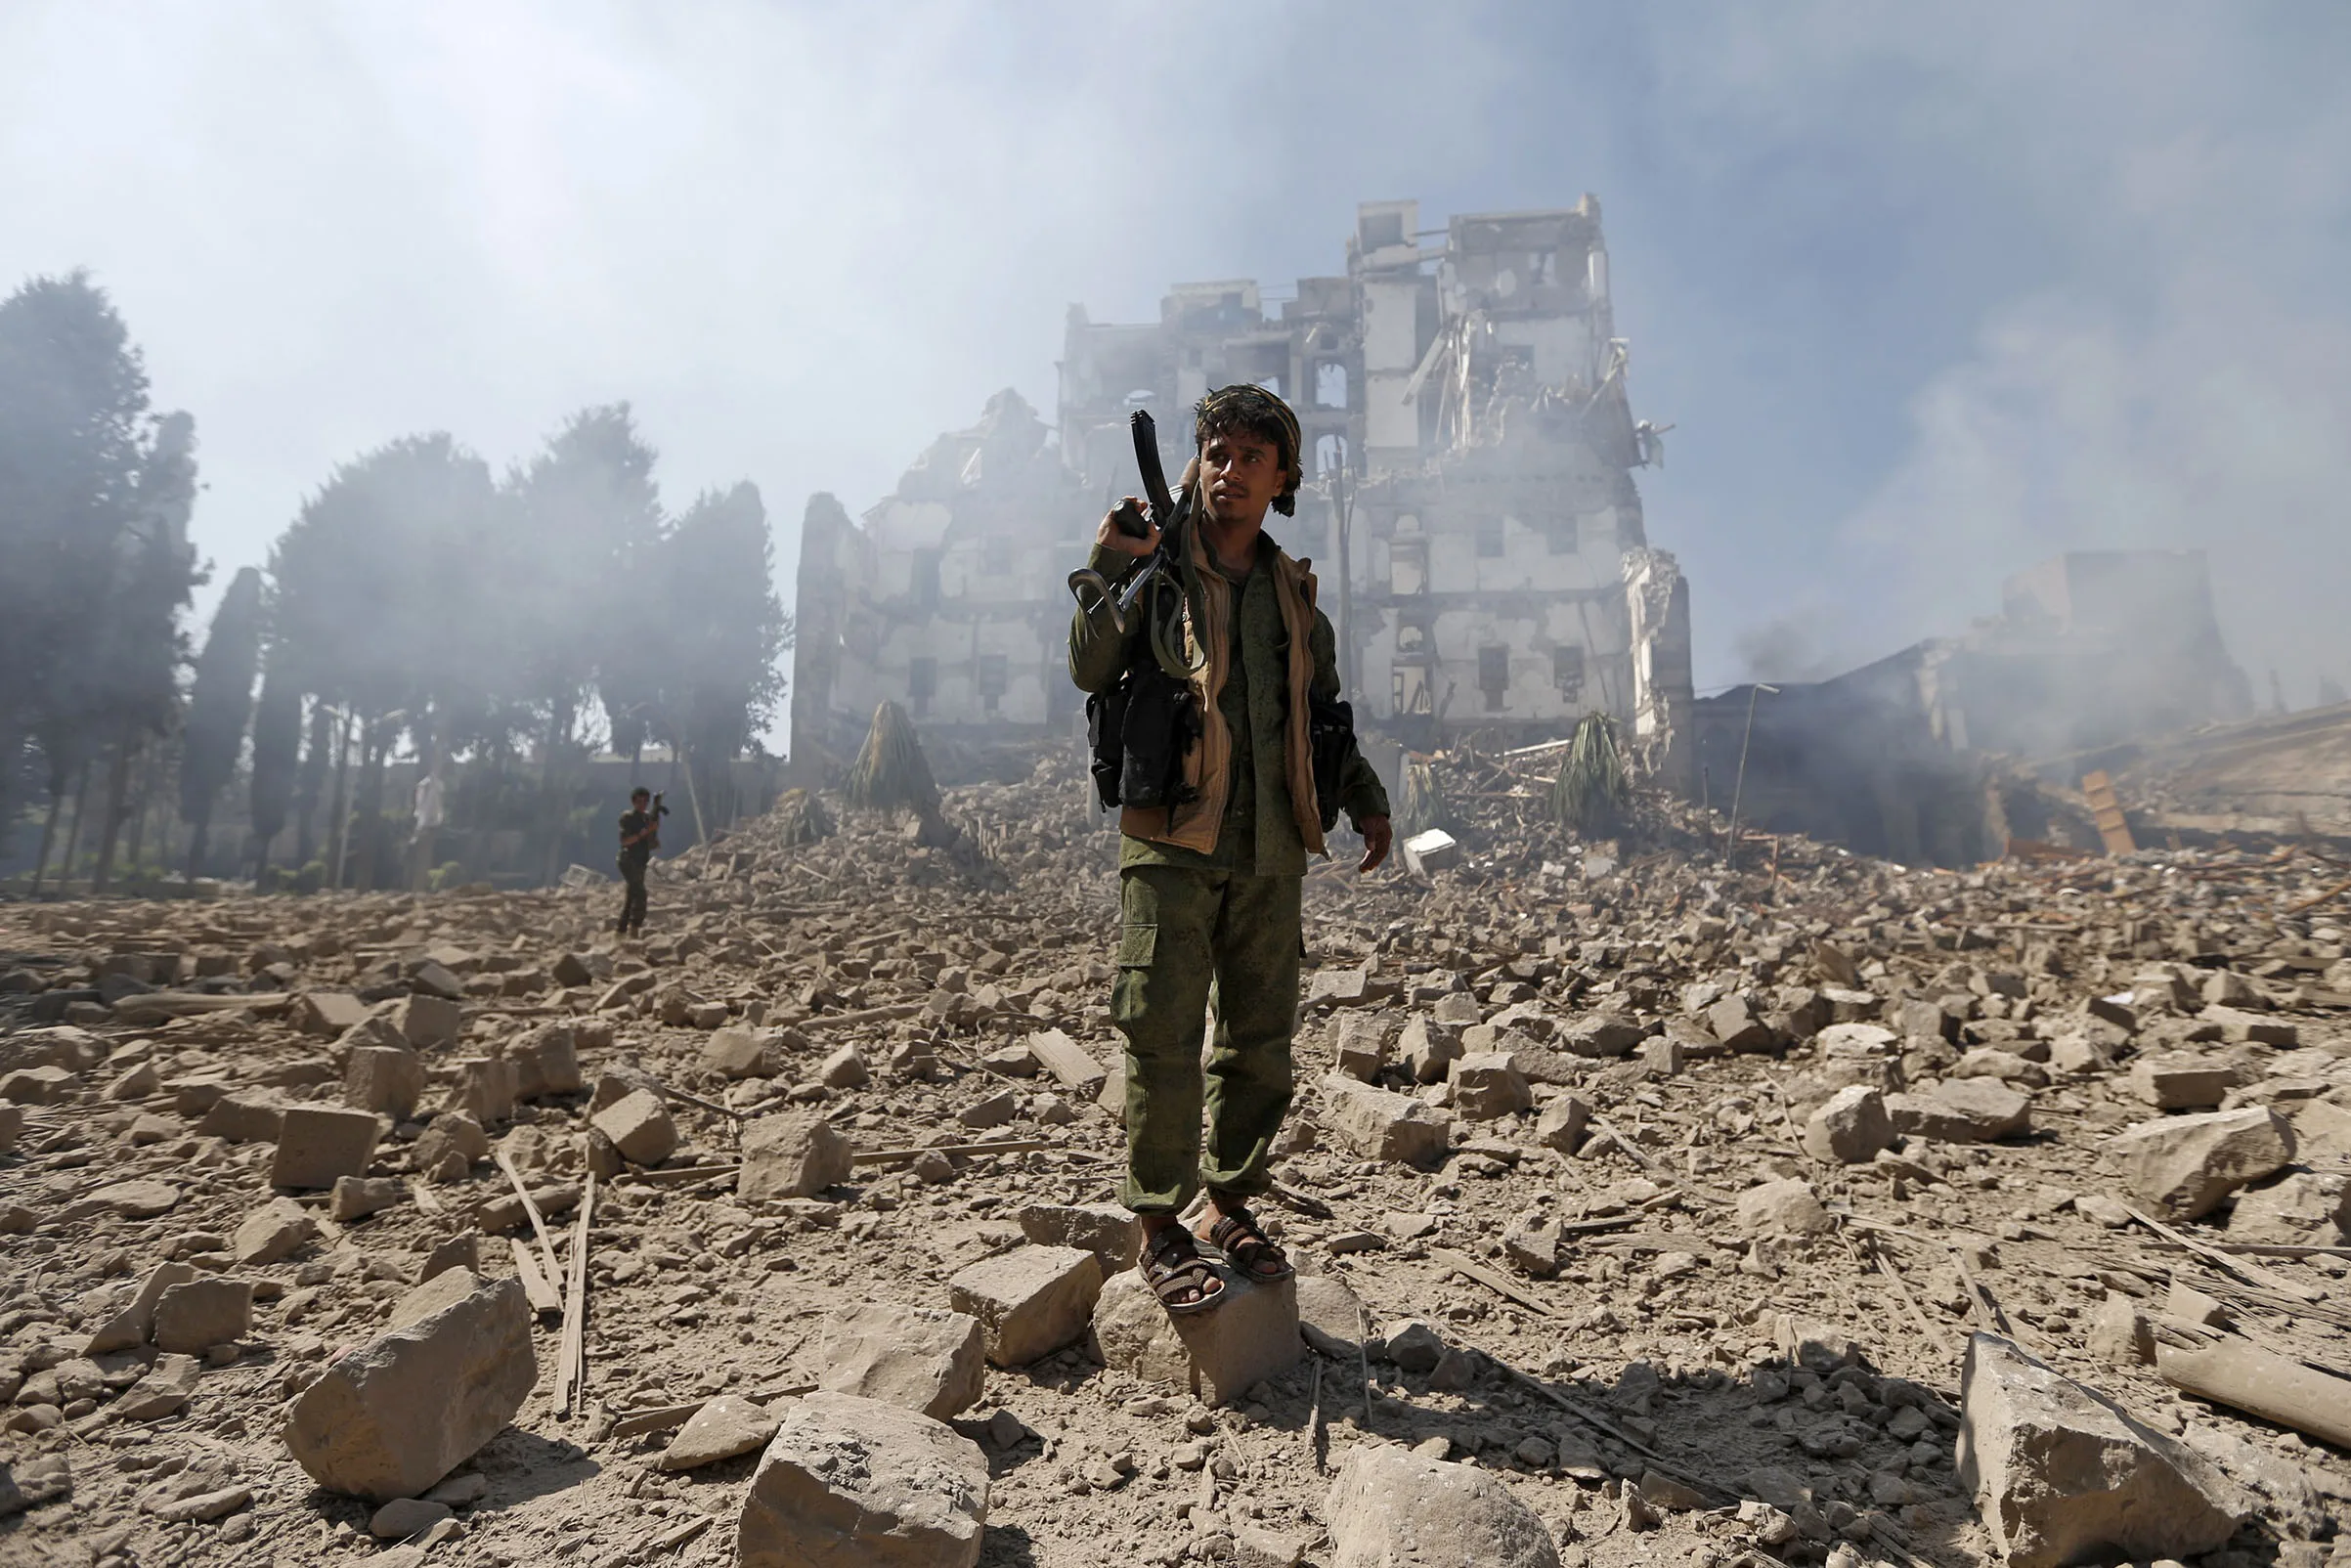 ساهمت الأسلحة الفرنسية في تدمير اليمن